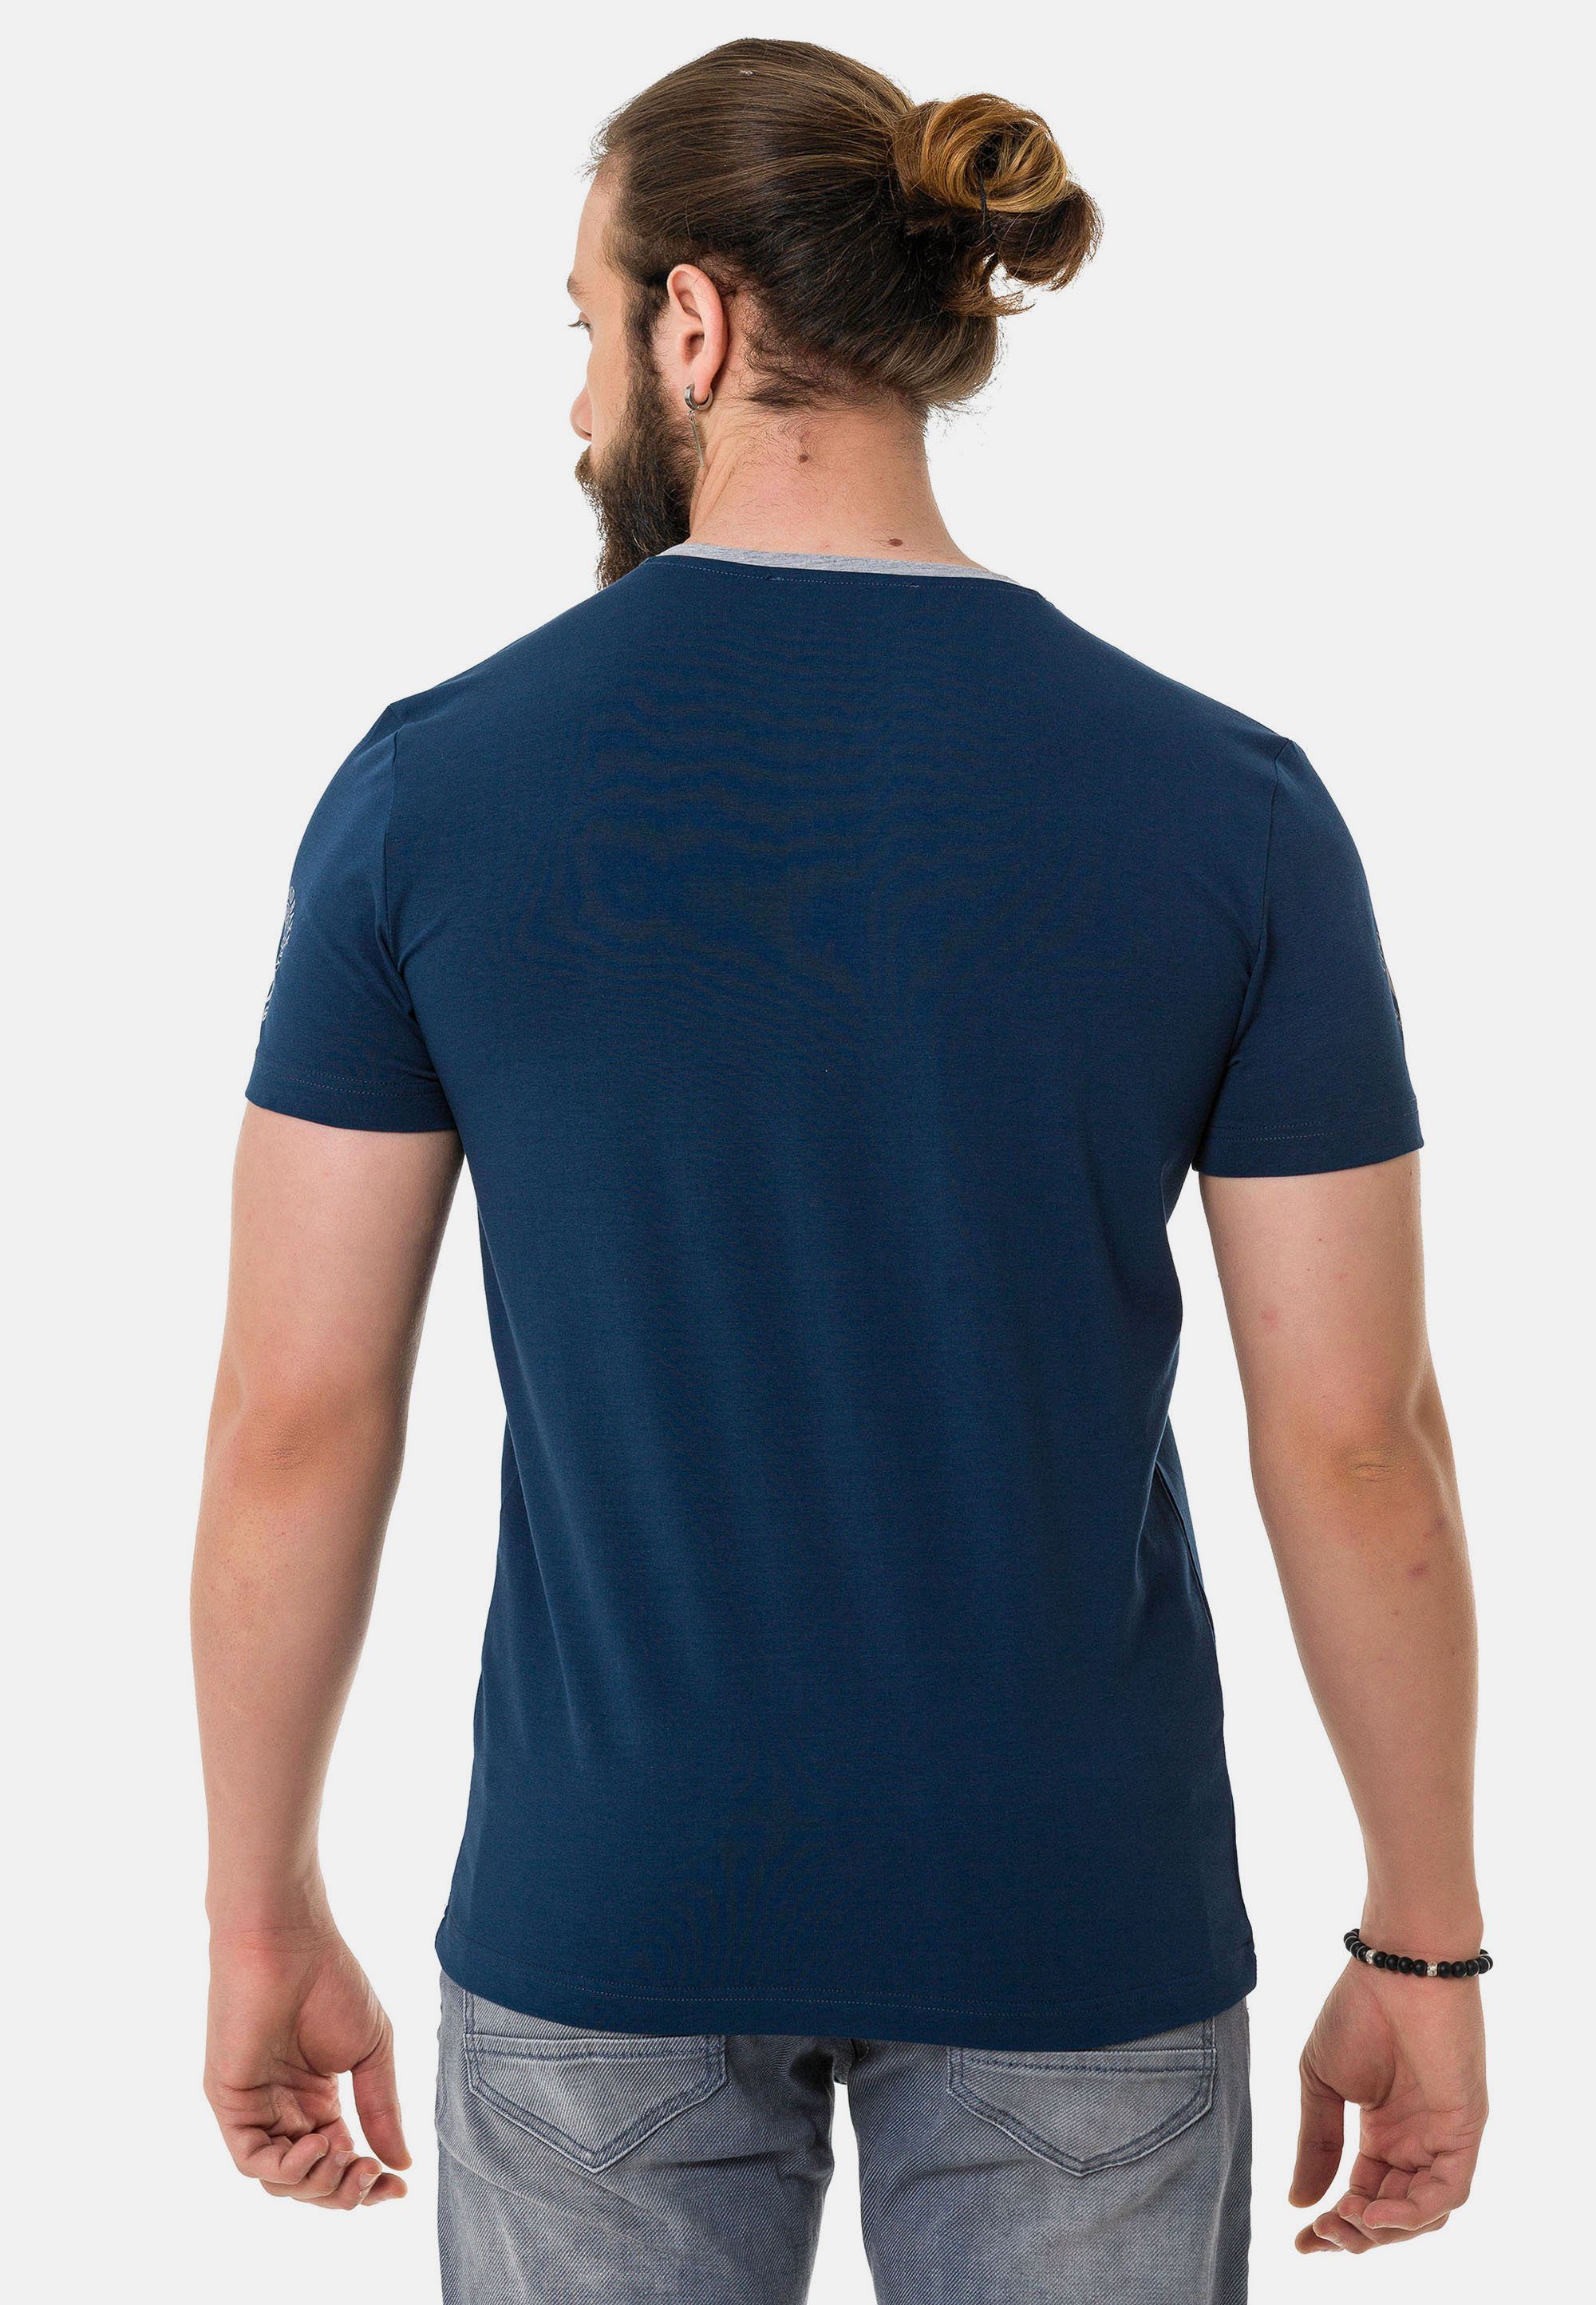 Cipo & Baxx T-Shirt mit Markenlogos dezenten blau